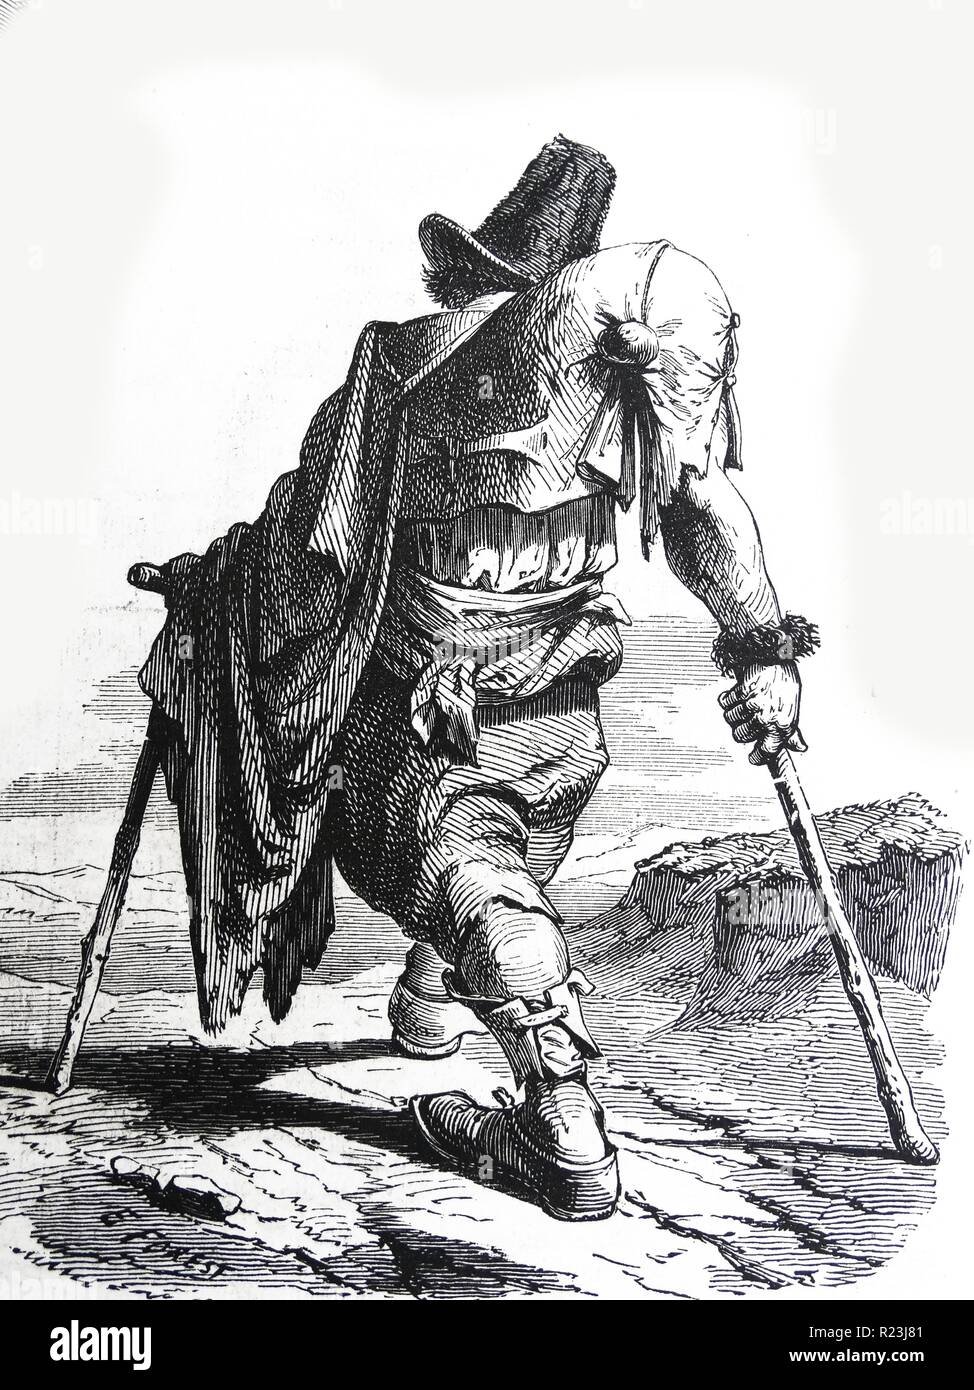 Illustration représentant une infirmité à l'aide de ses béquilles pour marcher. Datée 1800 Banque D'Images